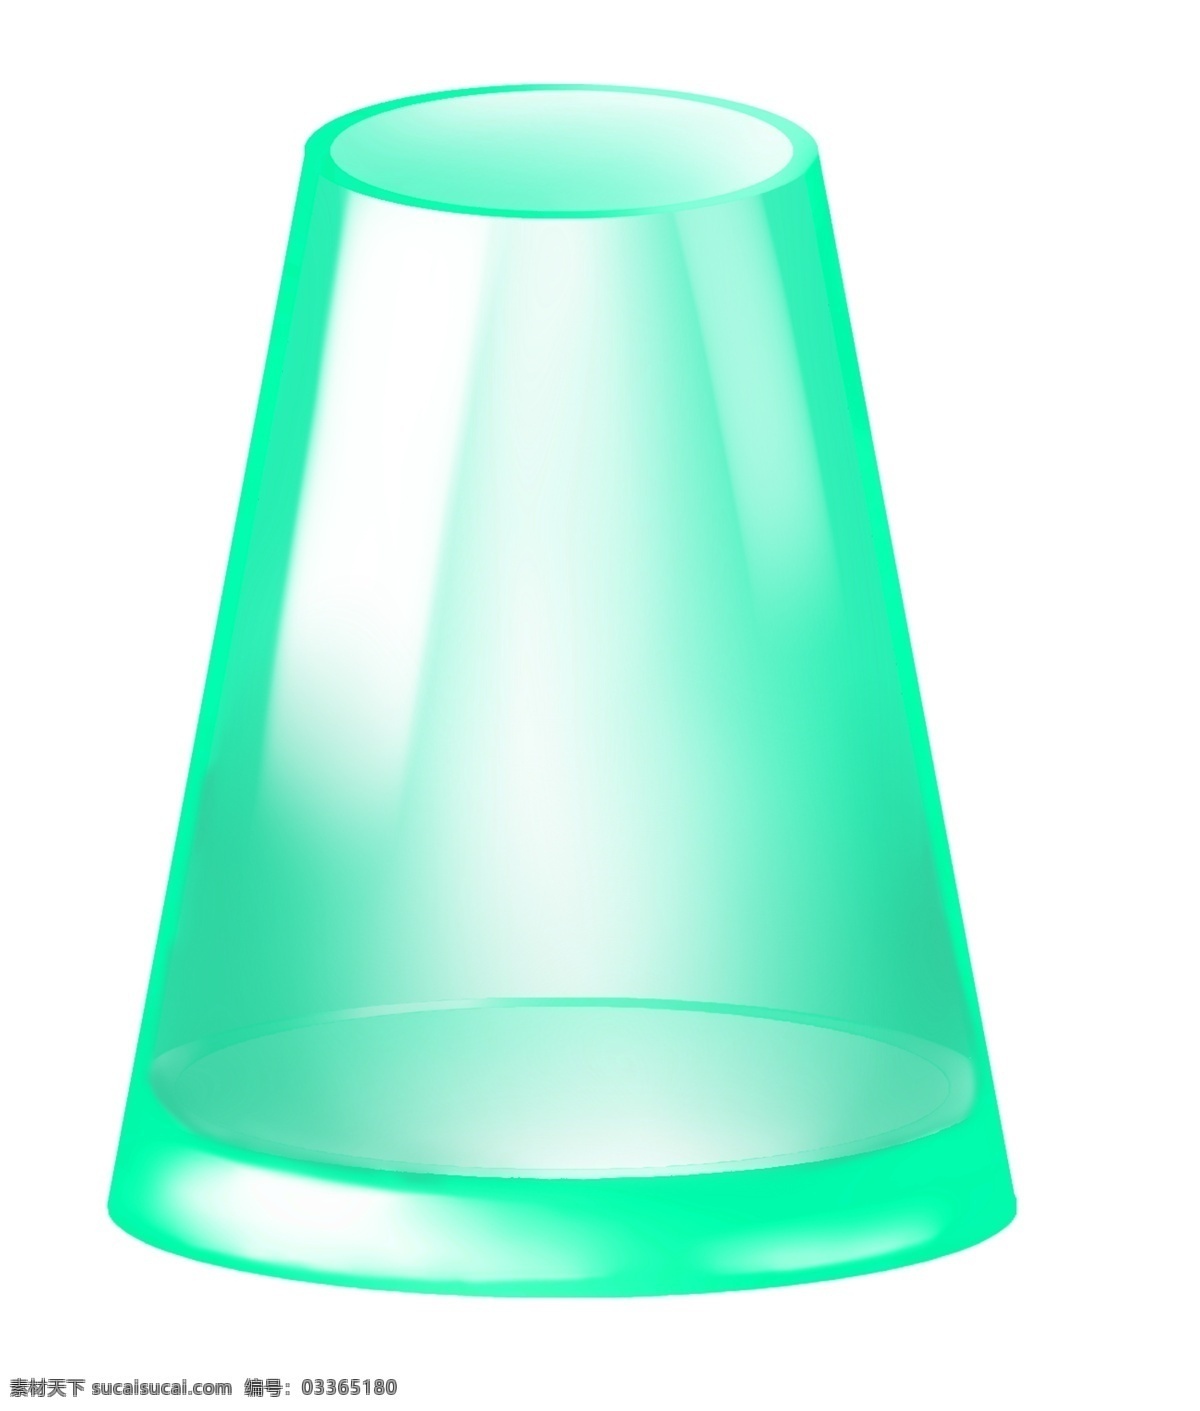 绿色 立体 杯子 插图 小口瓶子 绿色瓶子 漂亮的瓶子 圆形瓶子 立体瓶子 玻璃瓶子 玻璃杯子 明亮的玻璃